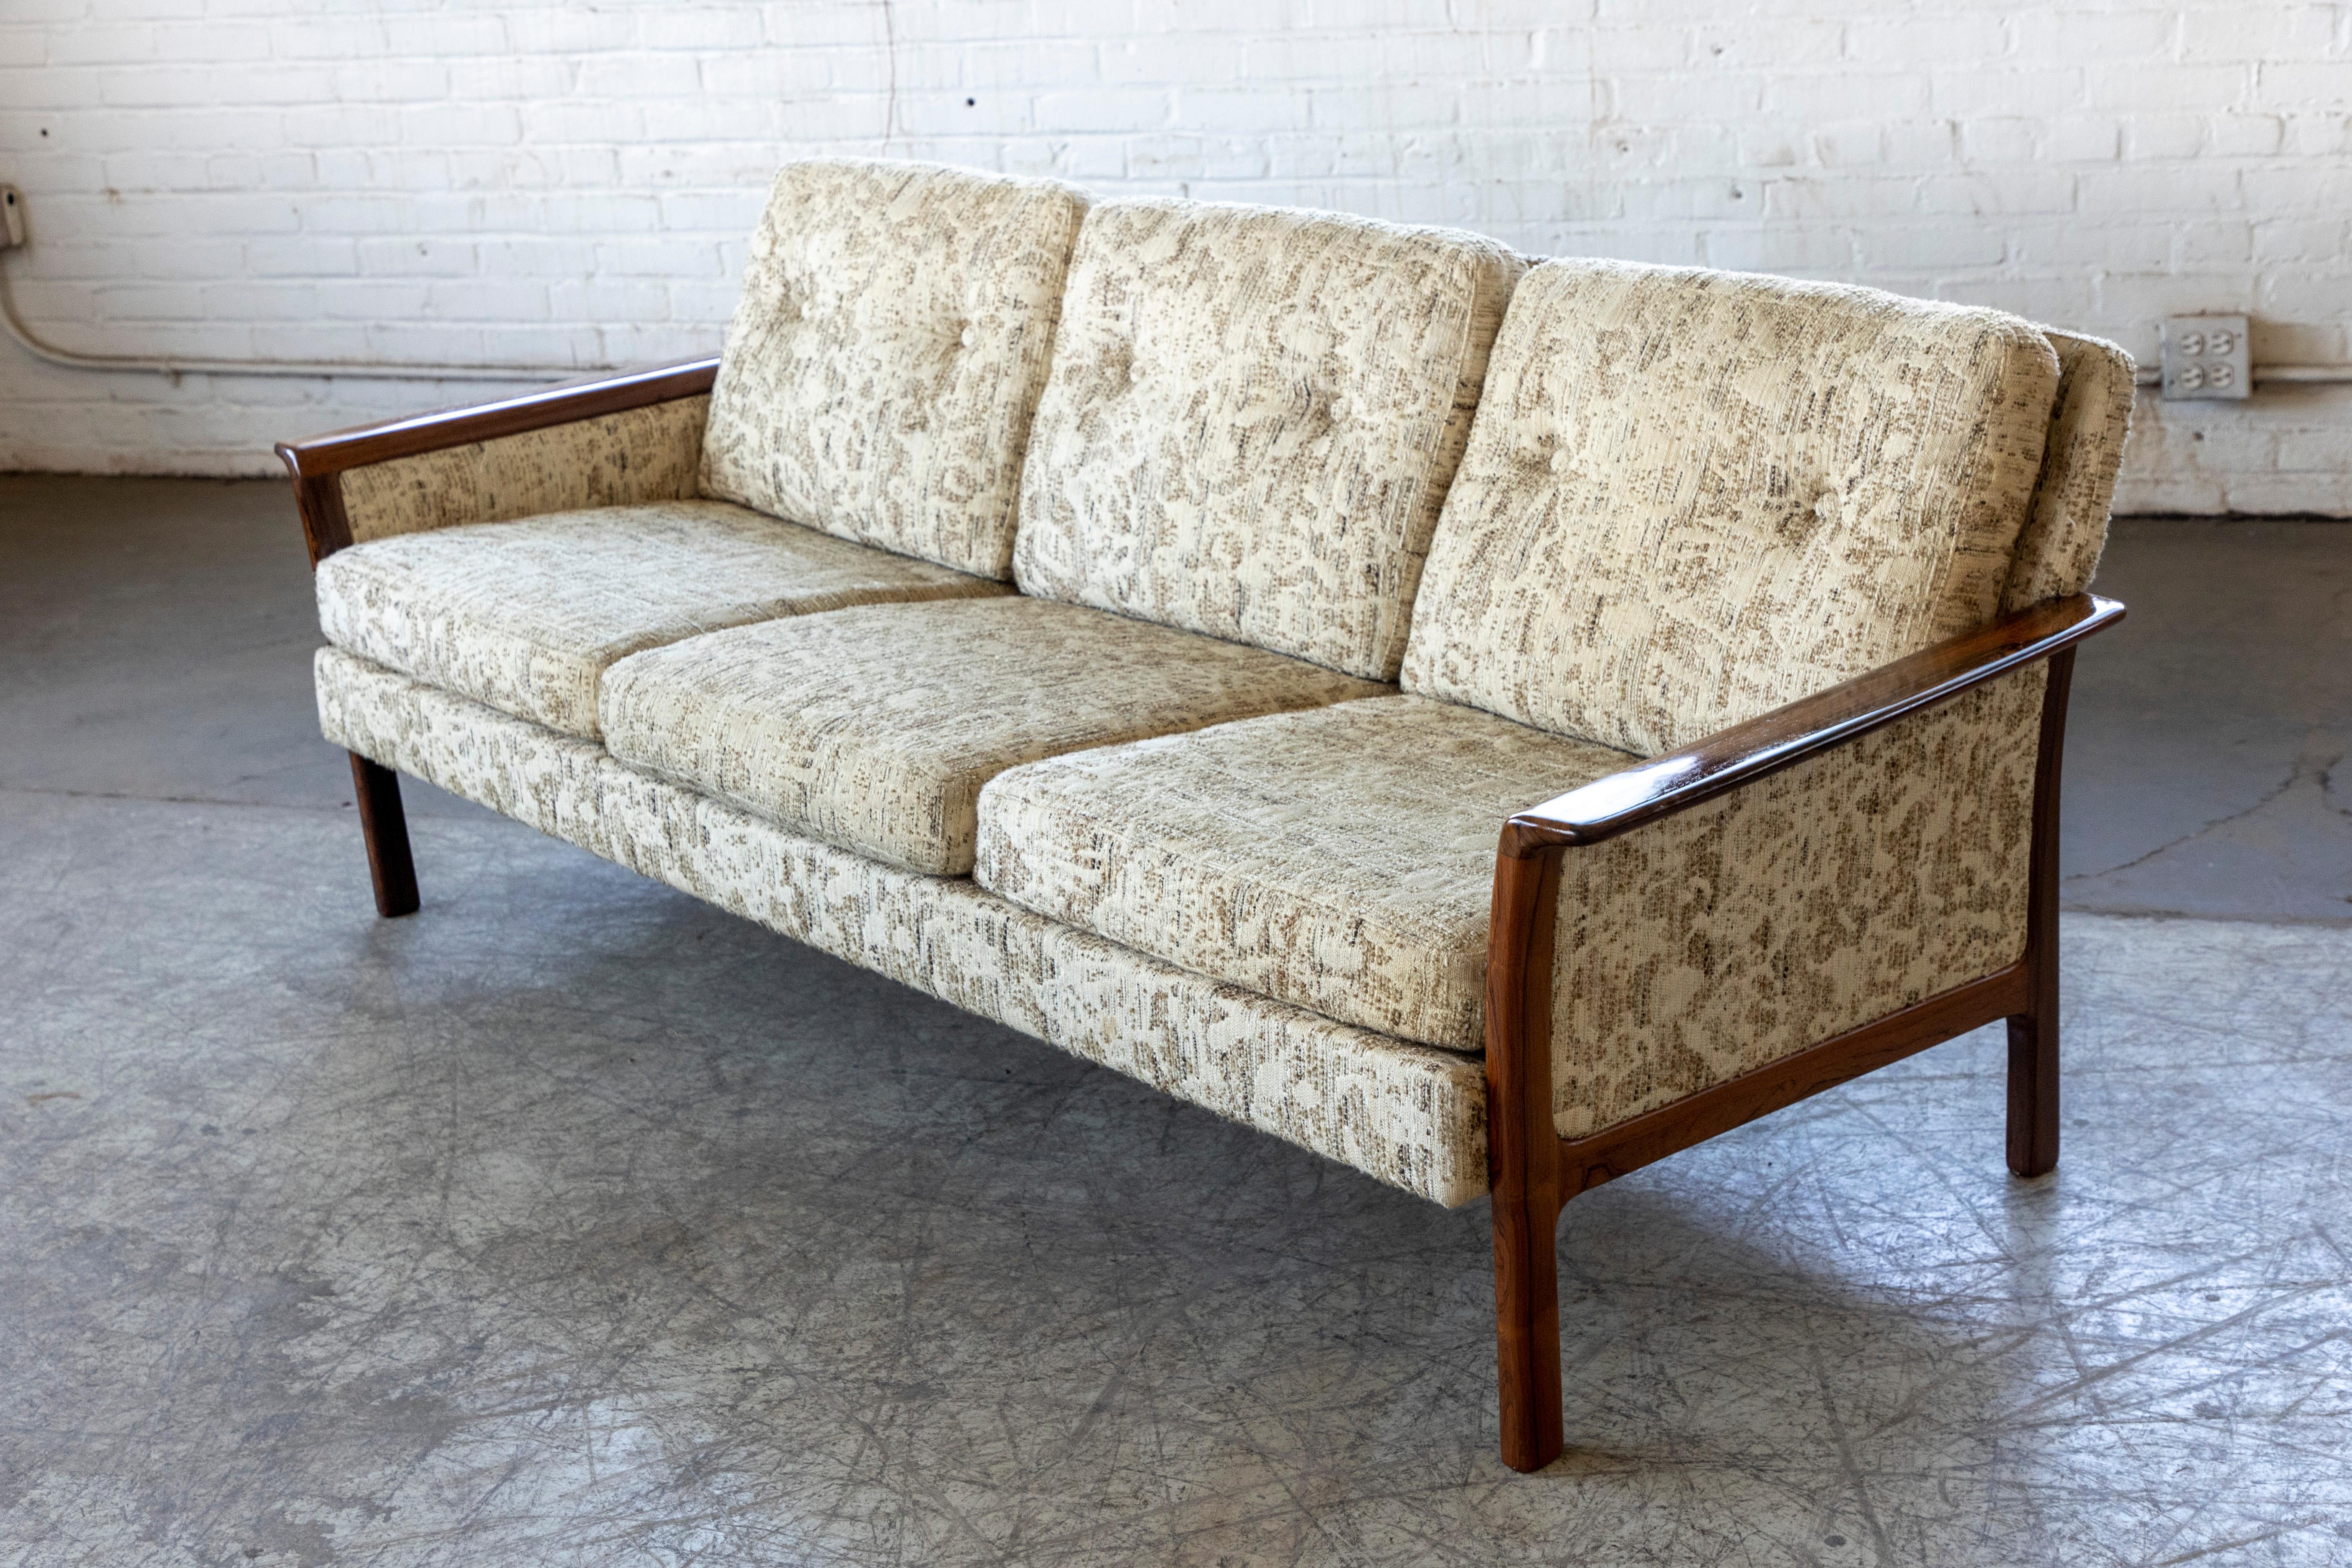 Sehr elegantes und gehobenes Sofa von Hans OIsen, entworfen für Vatne Mobler und hergestellt in Norwegen in den 1960er Jahren. Sofa aus Wollstoff mit rollendem Palisandergestell und Armlehnen. Das Holz ist in sehr gutem Originalzustand mit tiefer